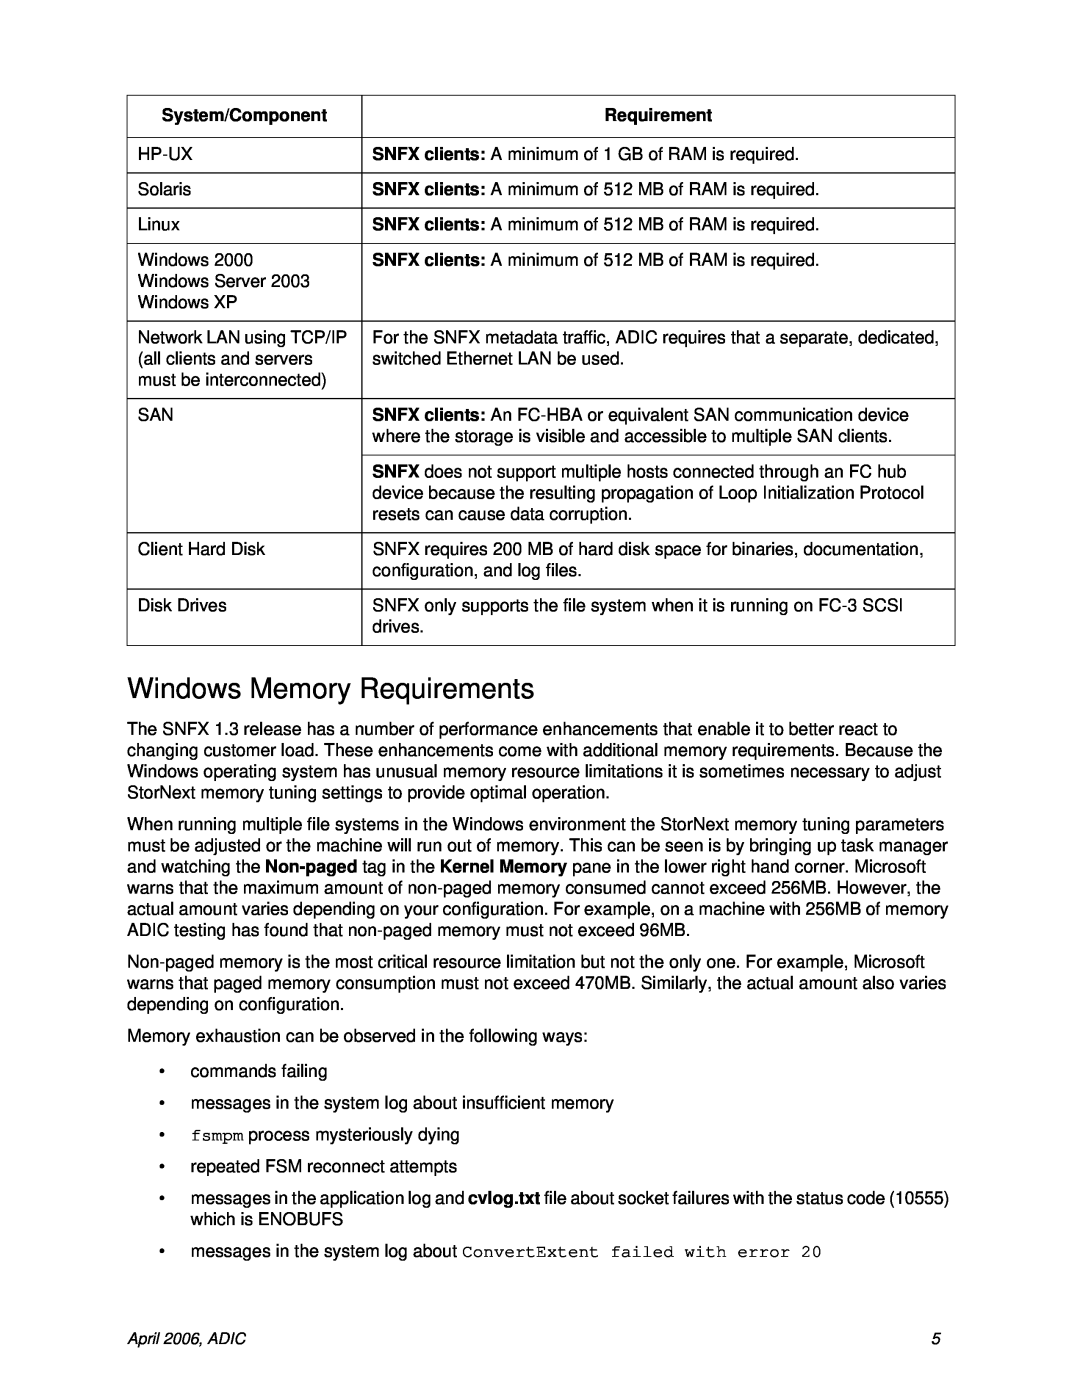 ADIC 1.3 manual Windows Memory Requirements 